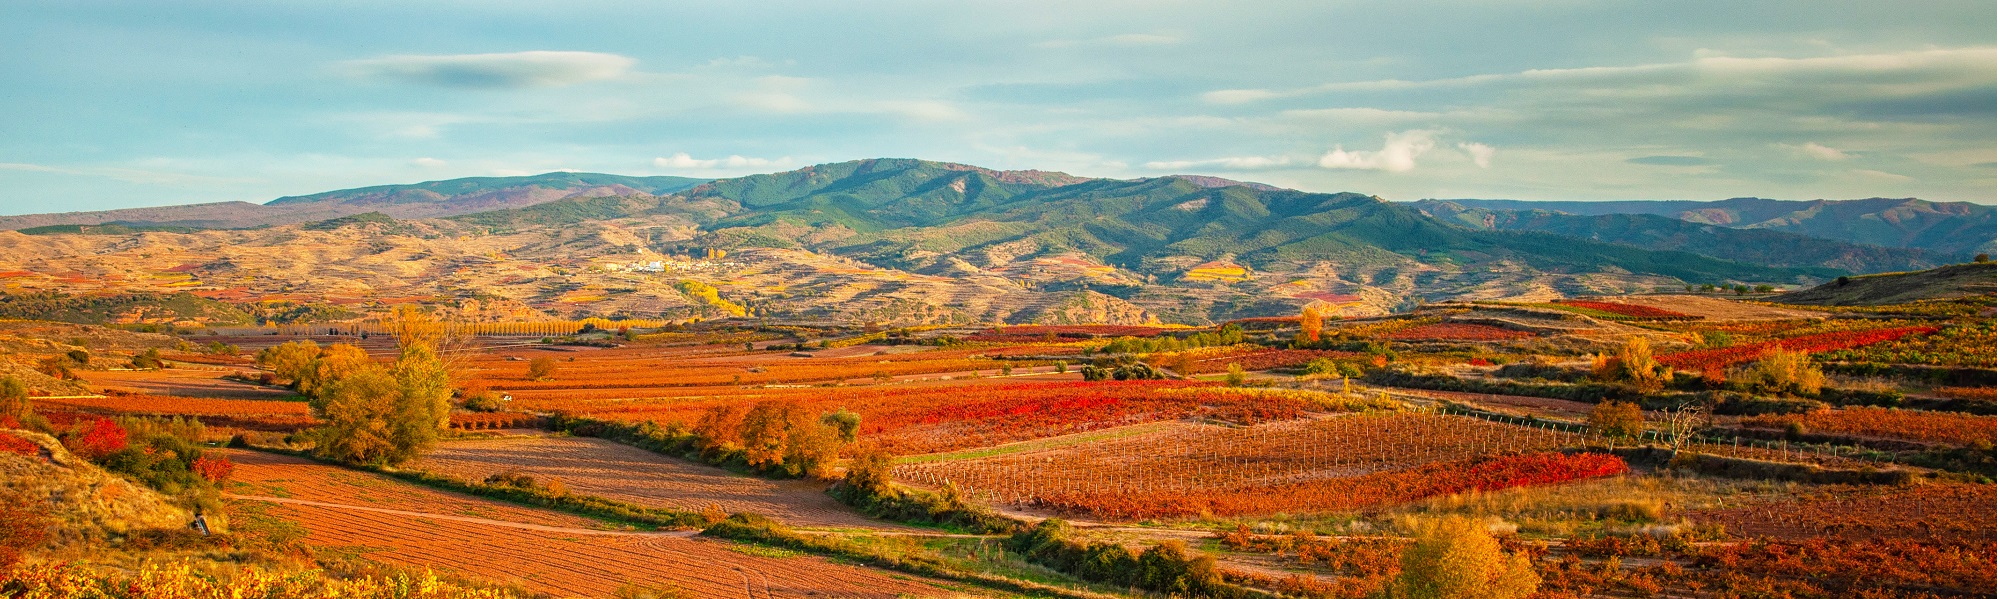 La Rioja, Wine Regions